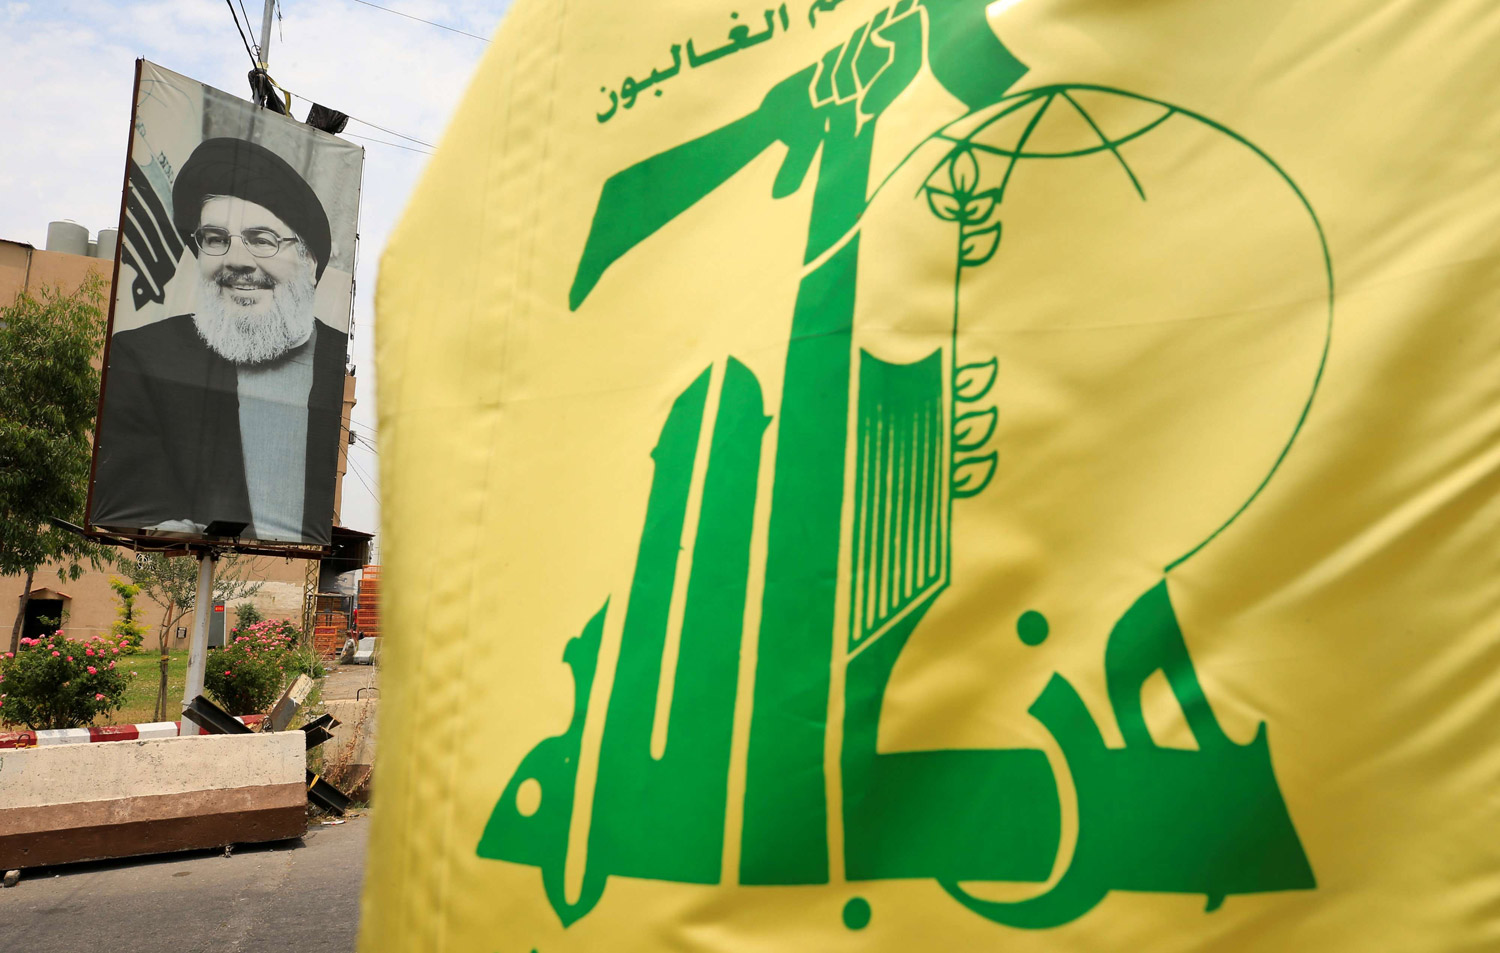 واشنطن تواصل تجفيف منابع تمويل حزب الله